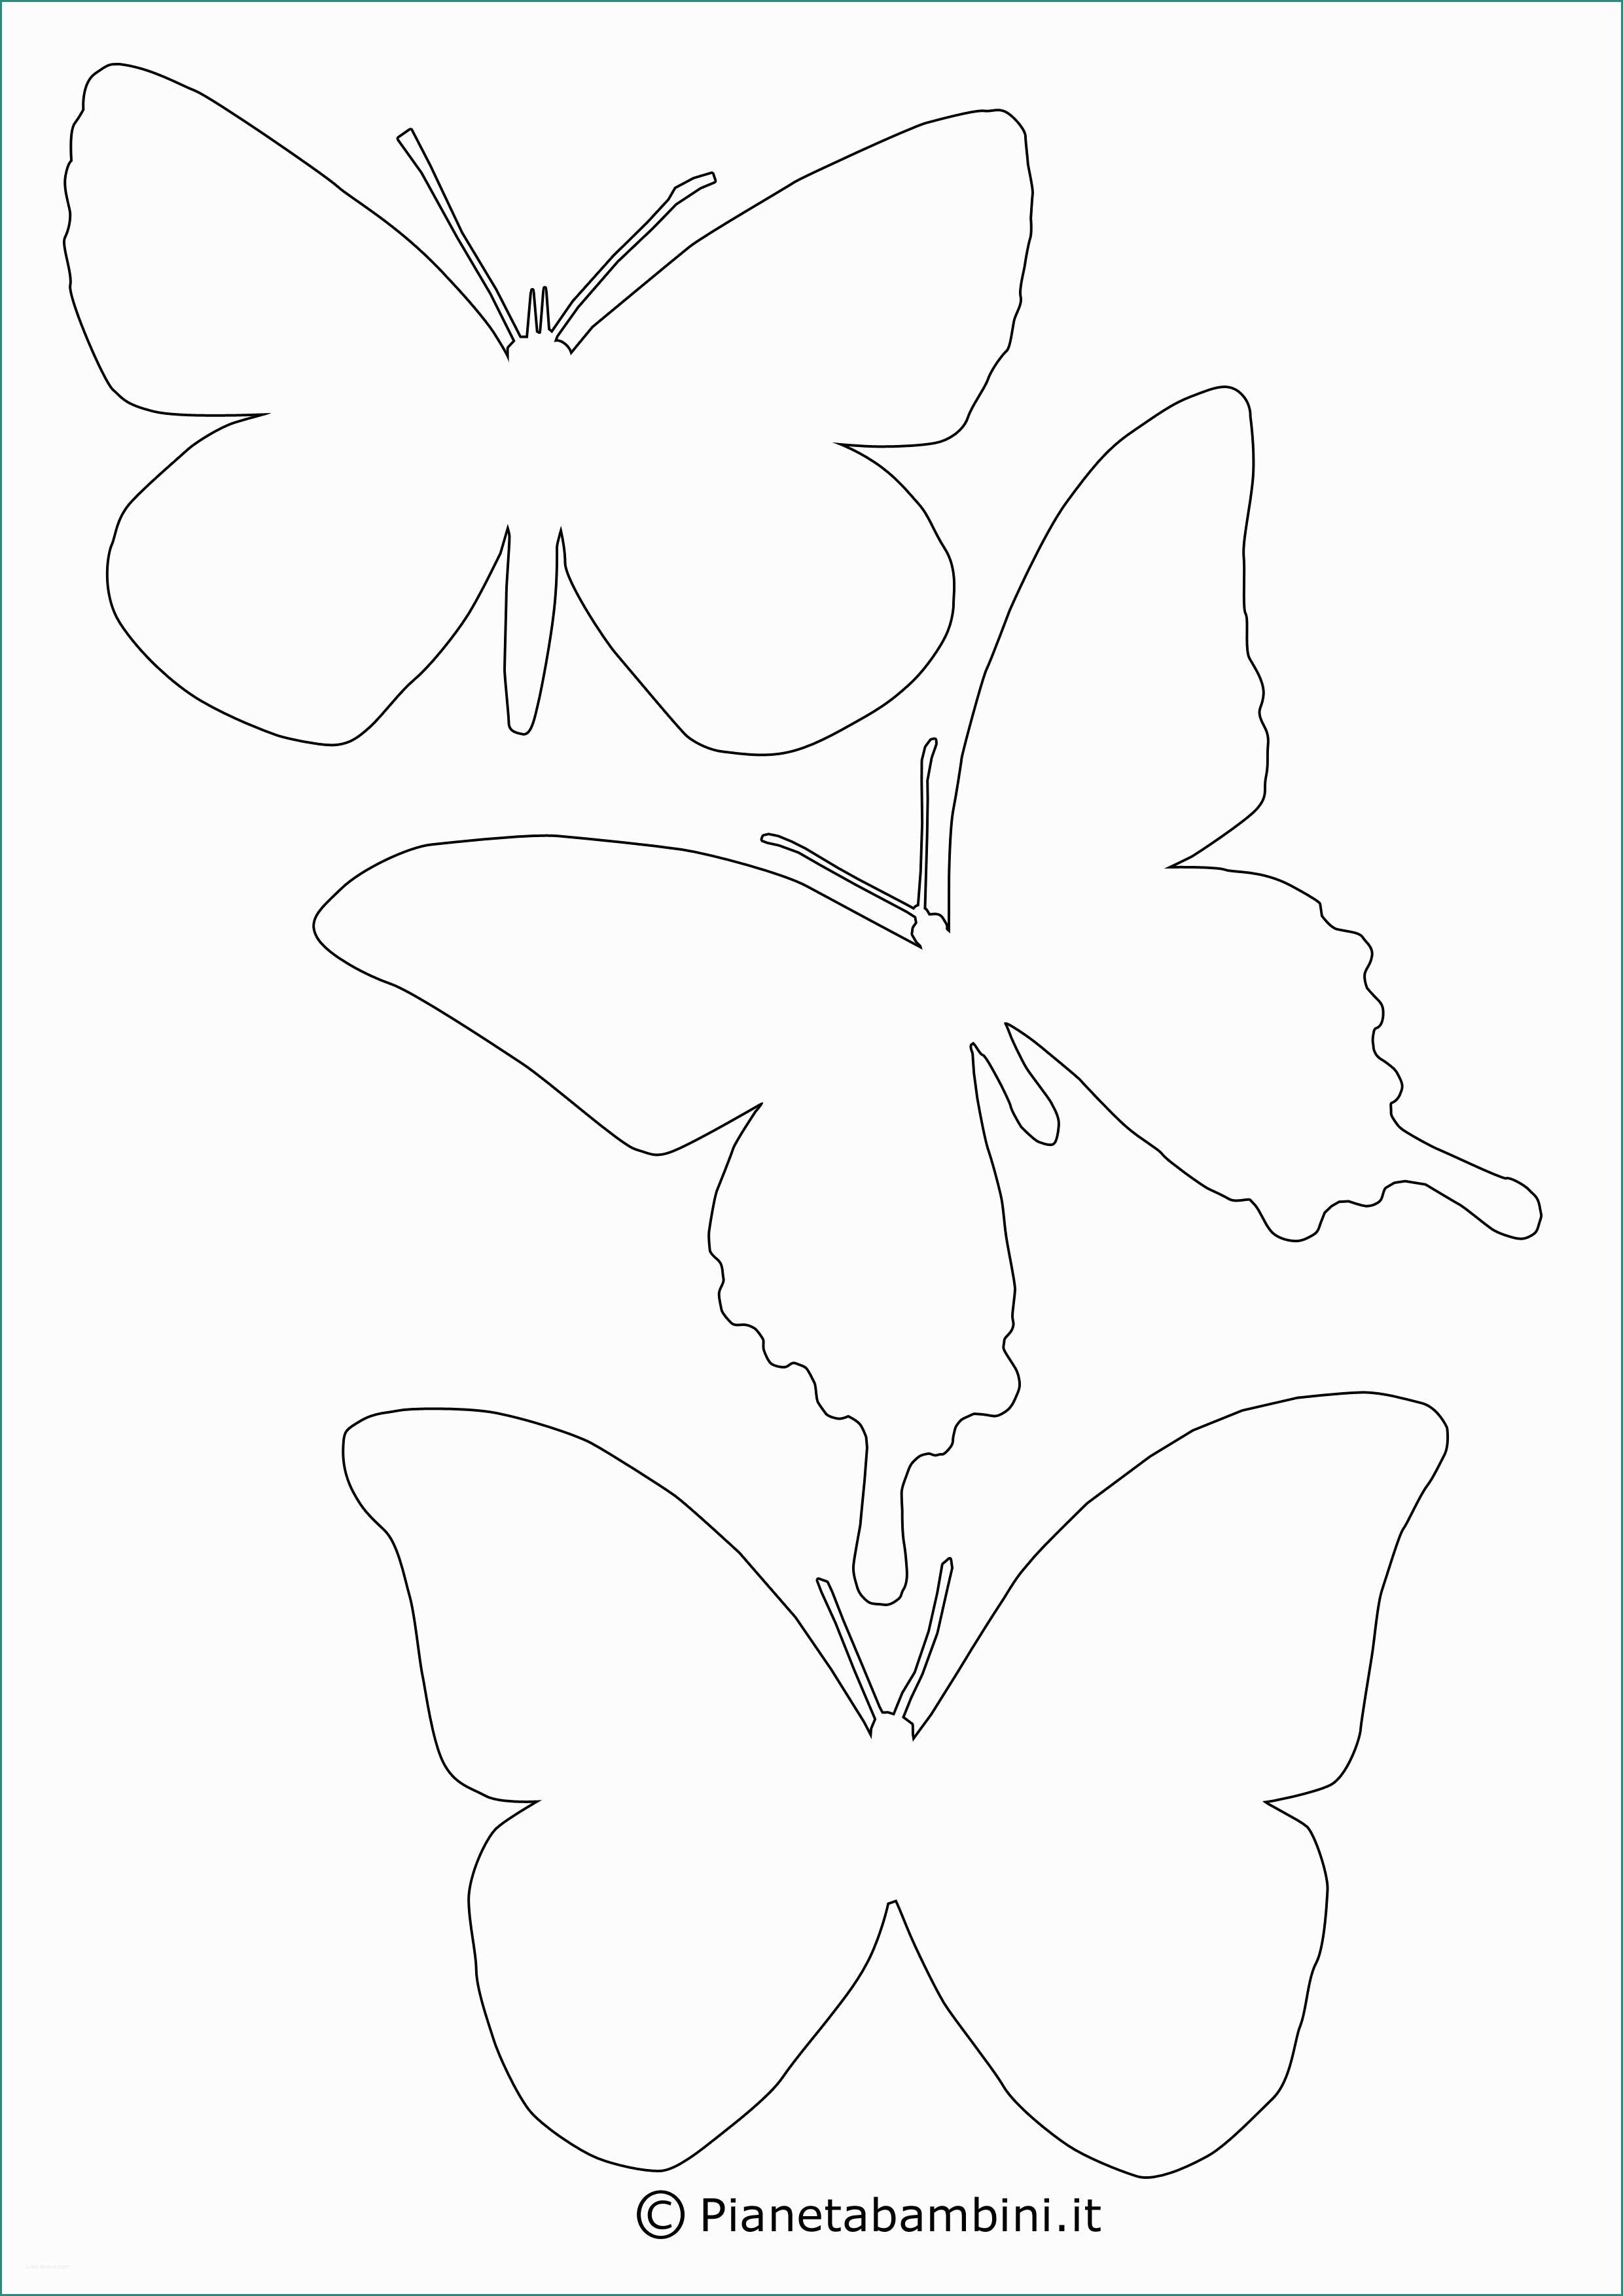 Immagini Di Farfalle Da Disegnare E In Alto Disegni Di Farfalle Da Stampare E Colorare